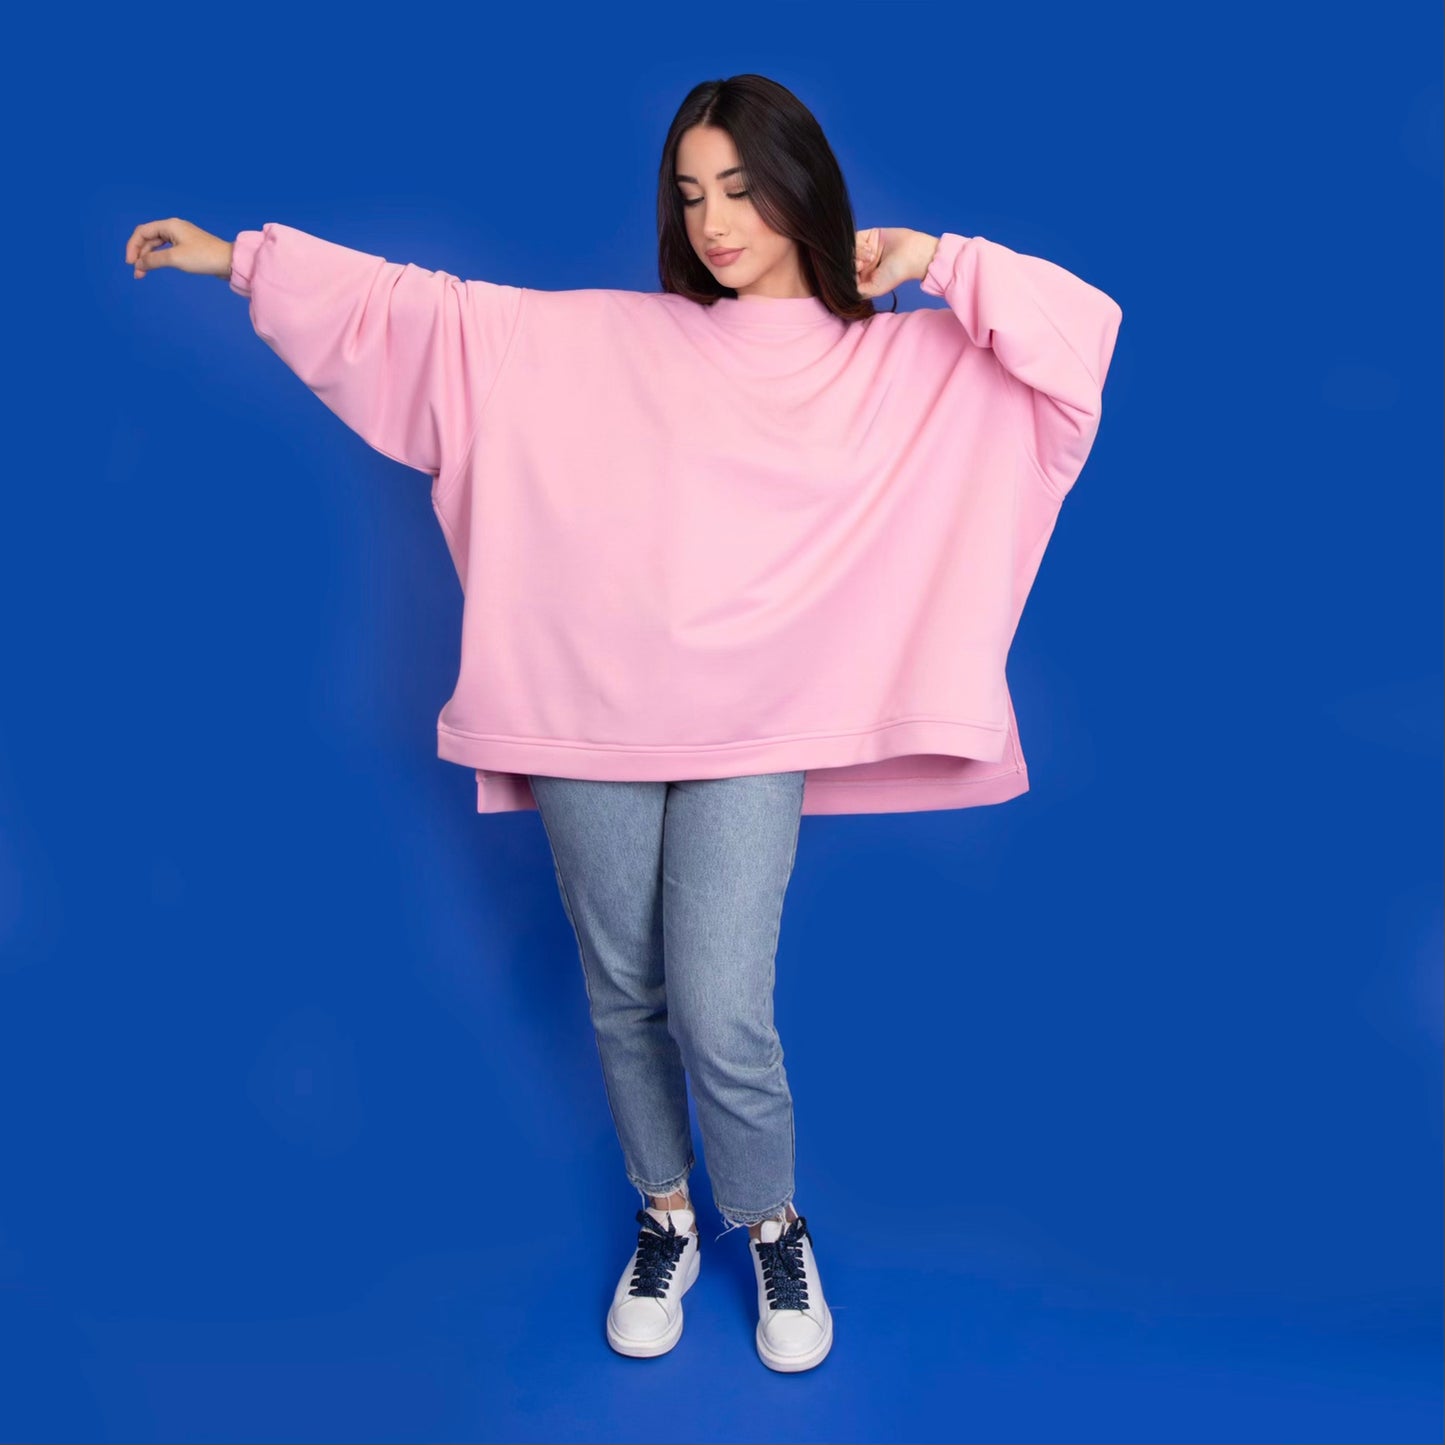 à la Leen "سوبر حلوة" type graphic sweatshirt in pink